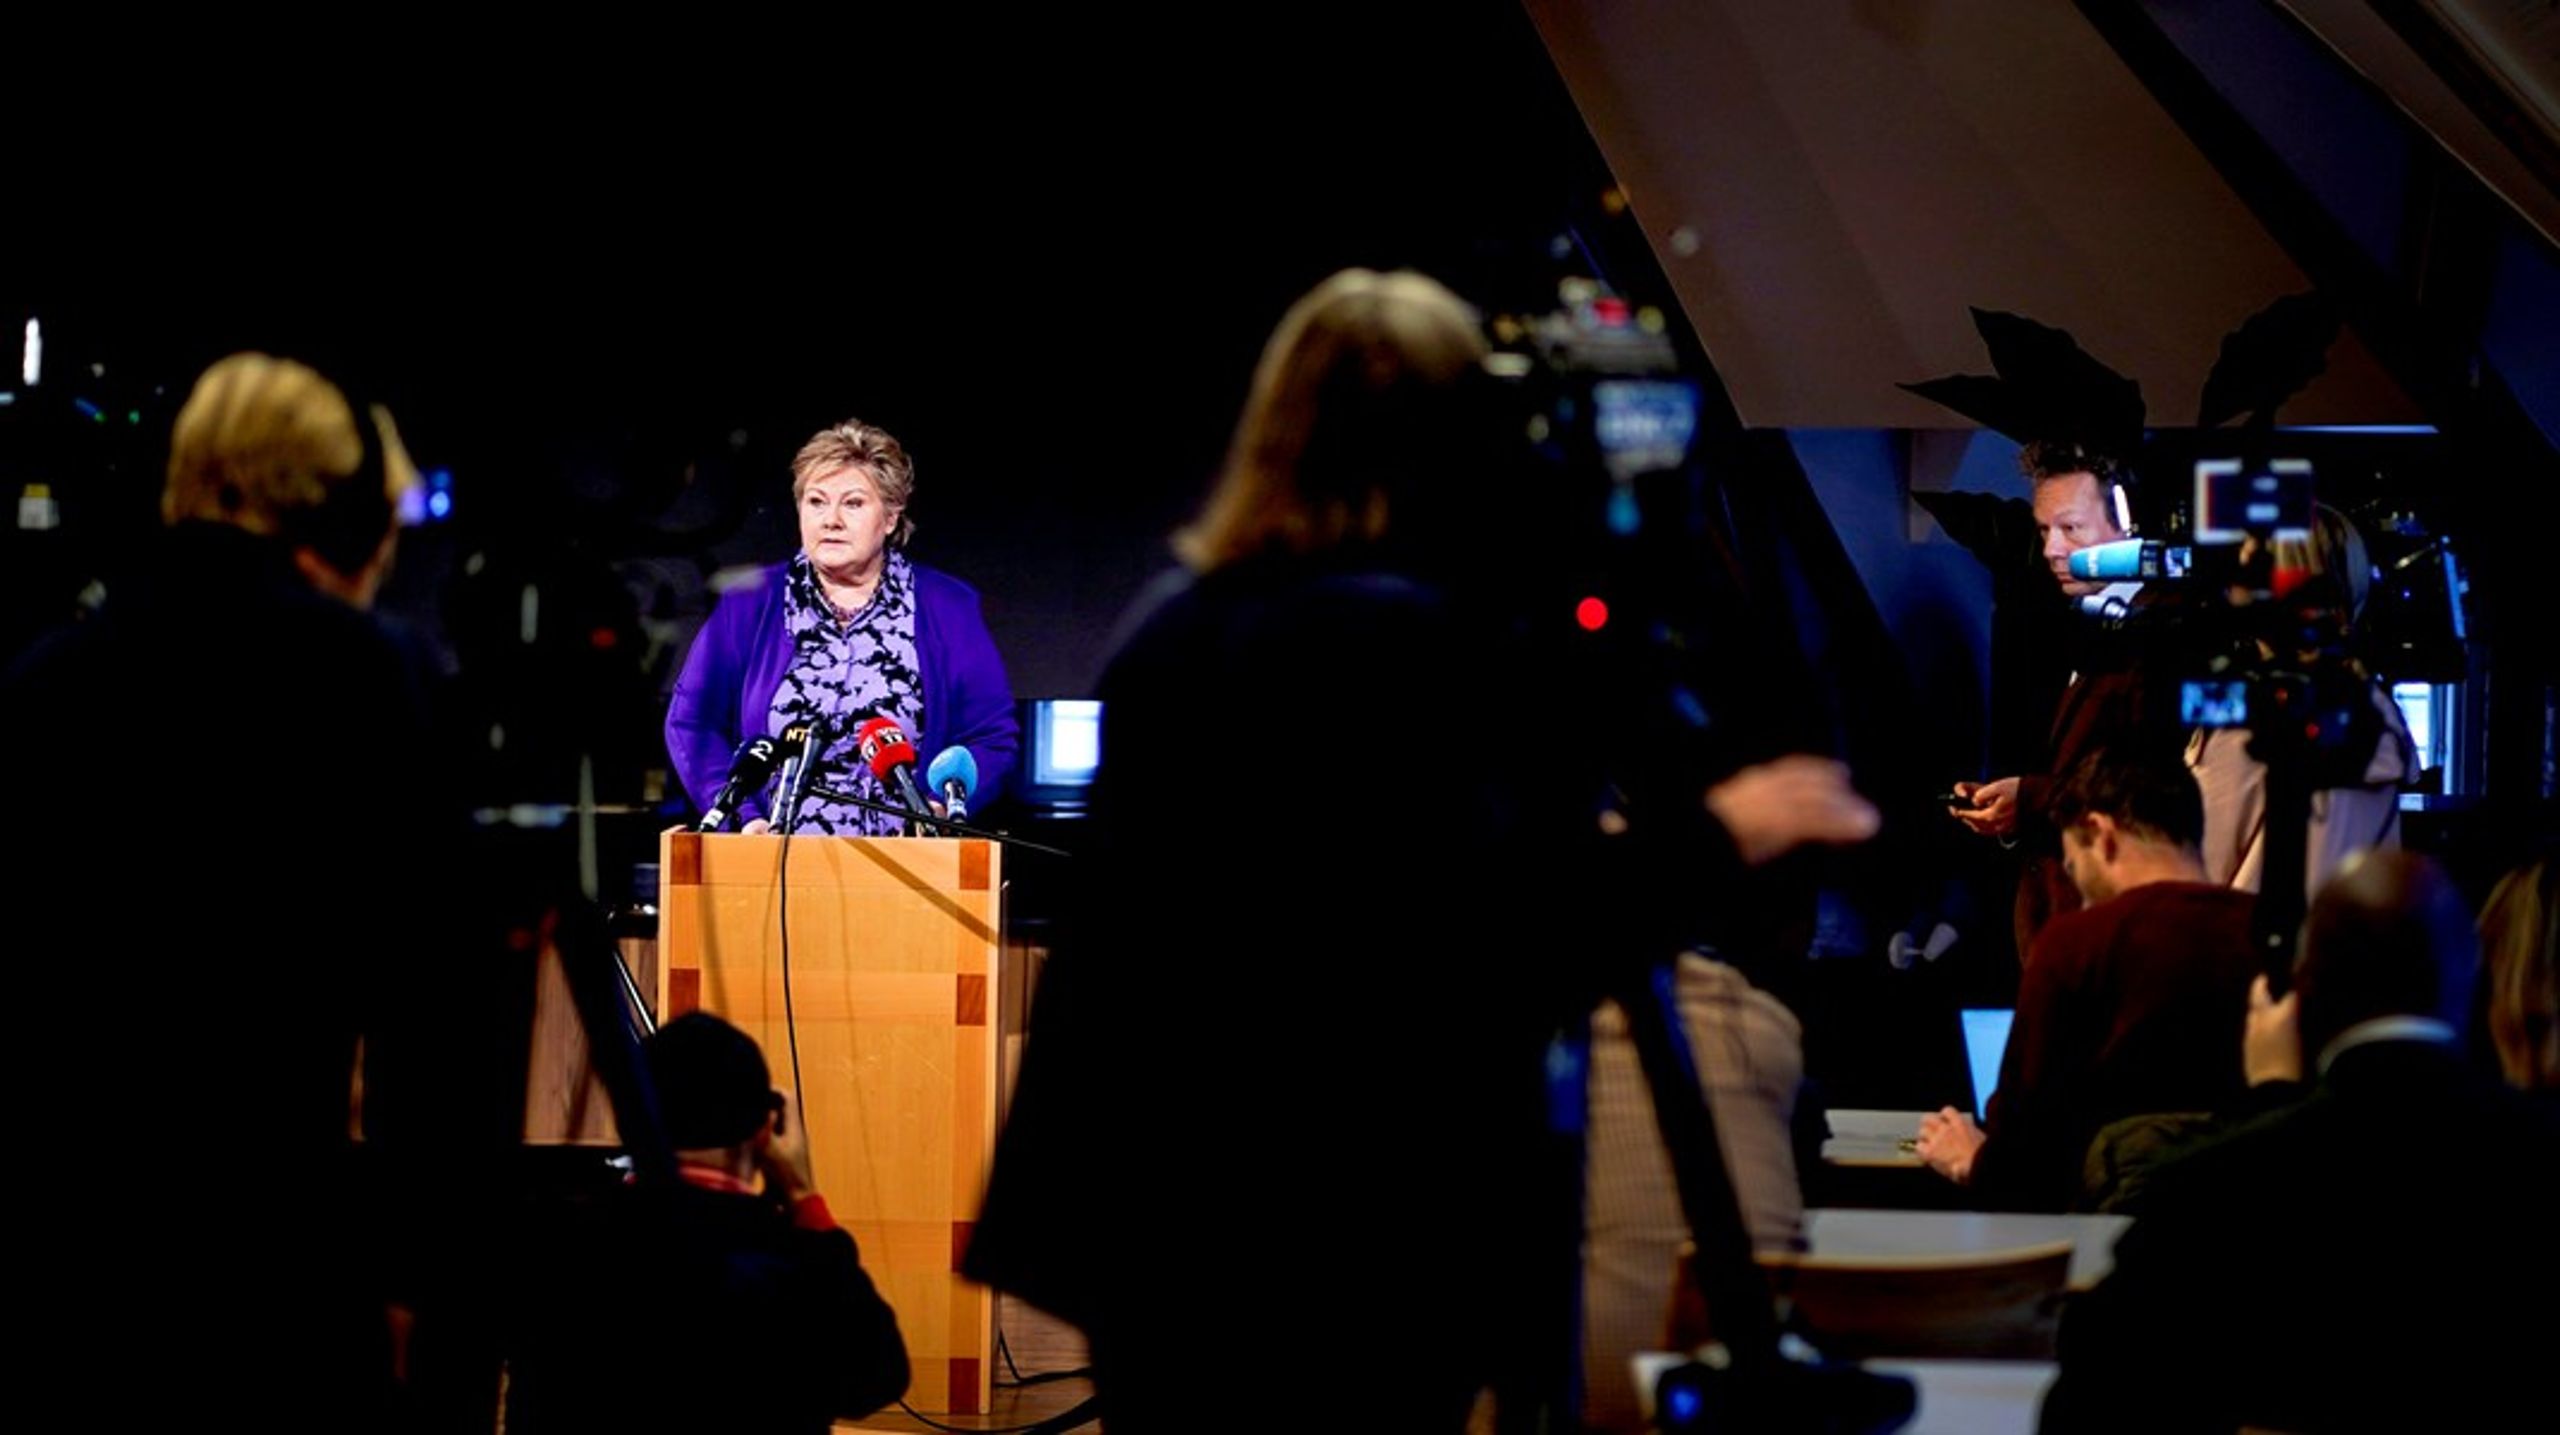 STORE PRESSEOPPMØTE: Erna Solberg holdt en tåredryppende pressekonferanse om mannens aksjehandler gjennom hennes tid som statsminister. I helgen fikk E24 Skup-diplom for prosjektet «Aksjeskandalene i norsk politikk».&nbsp;